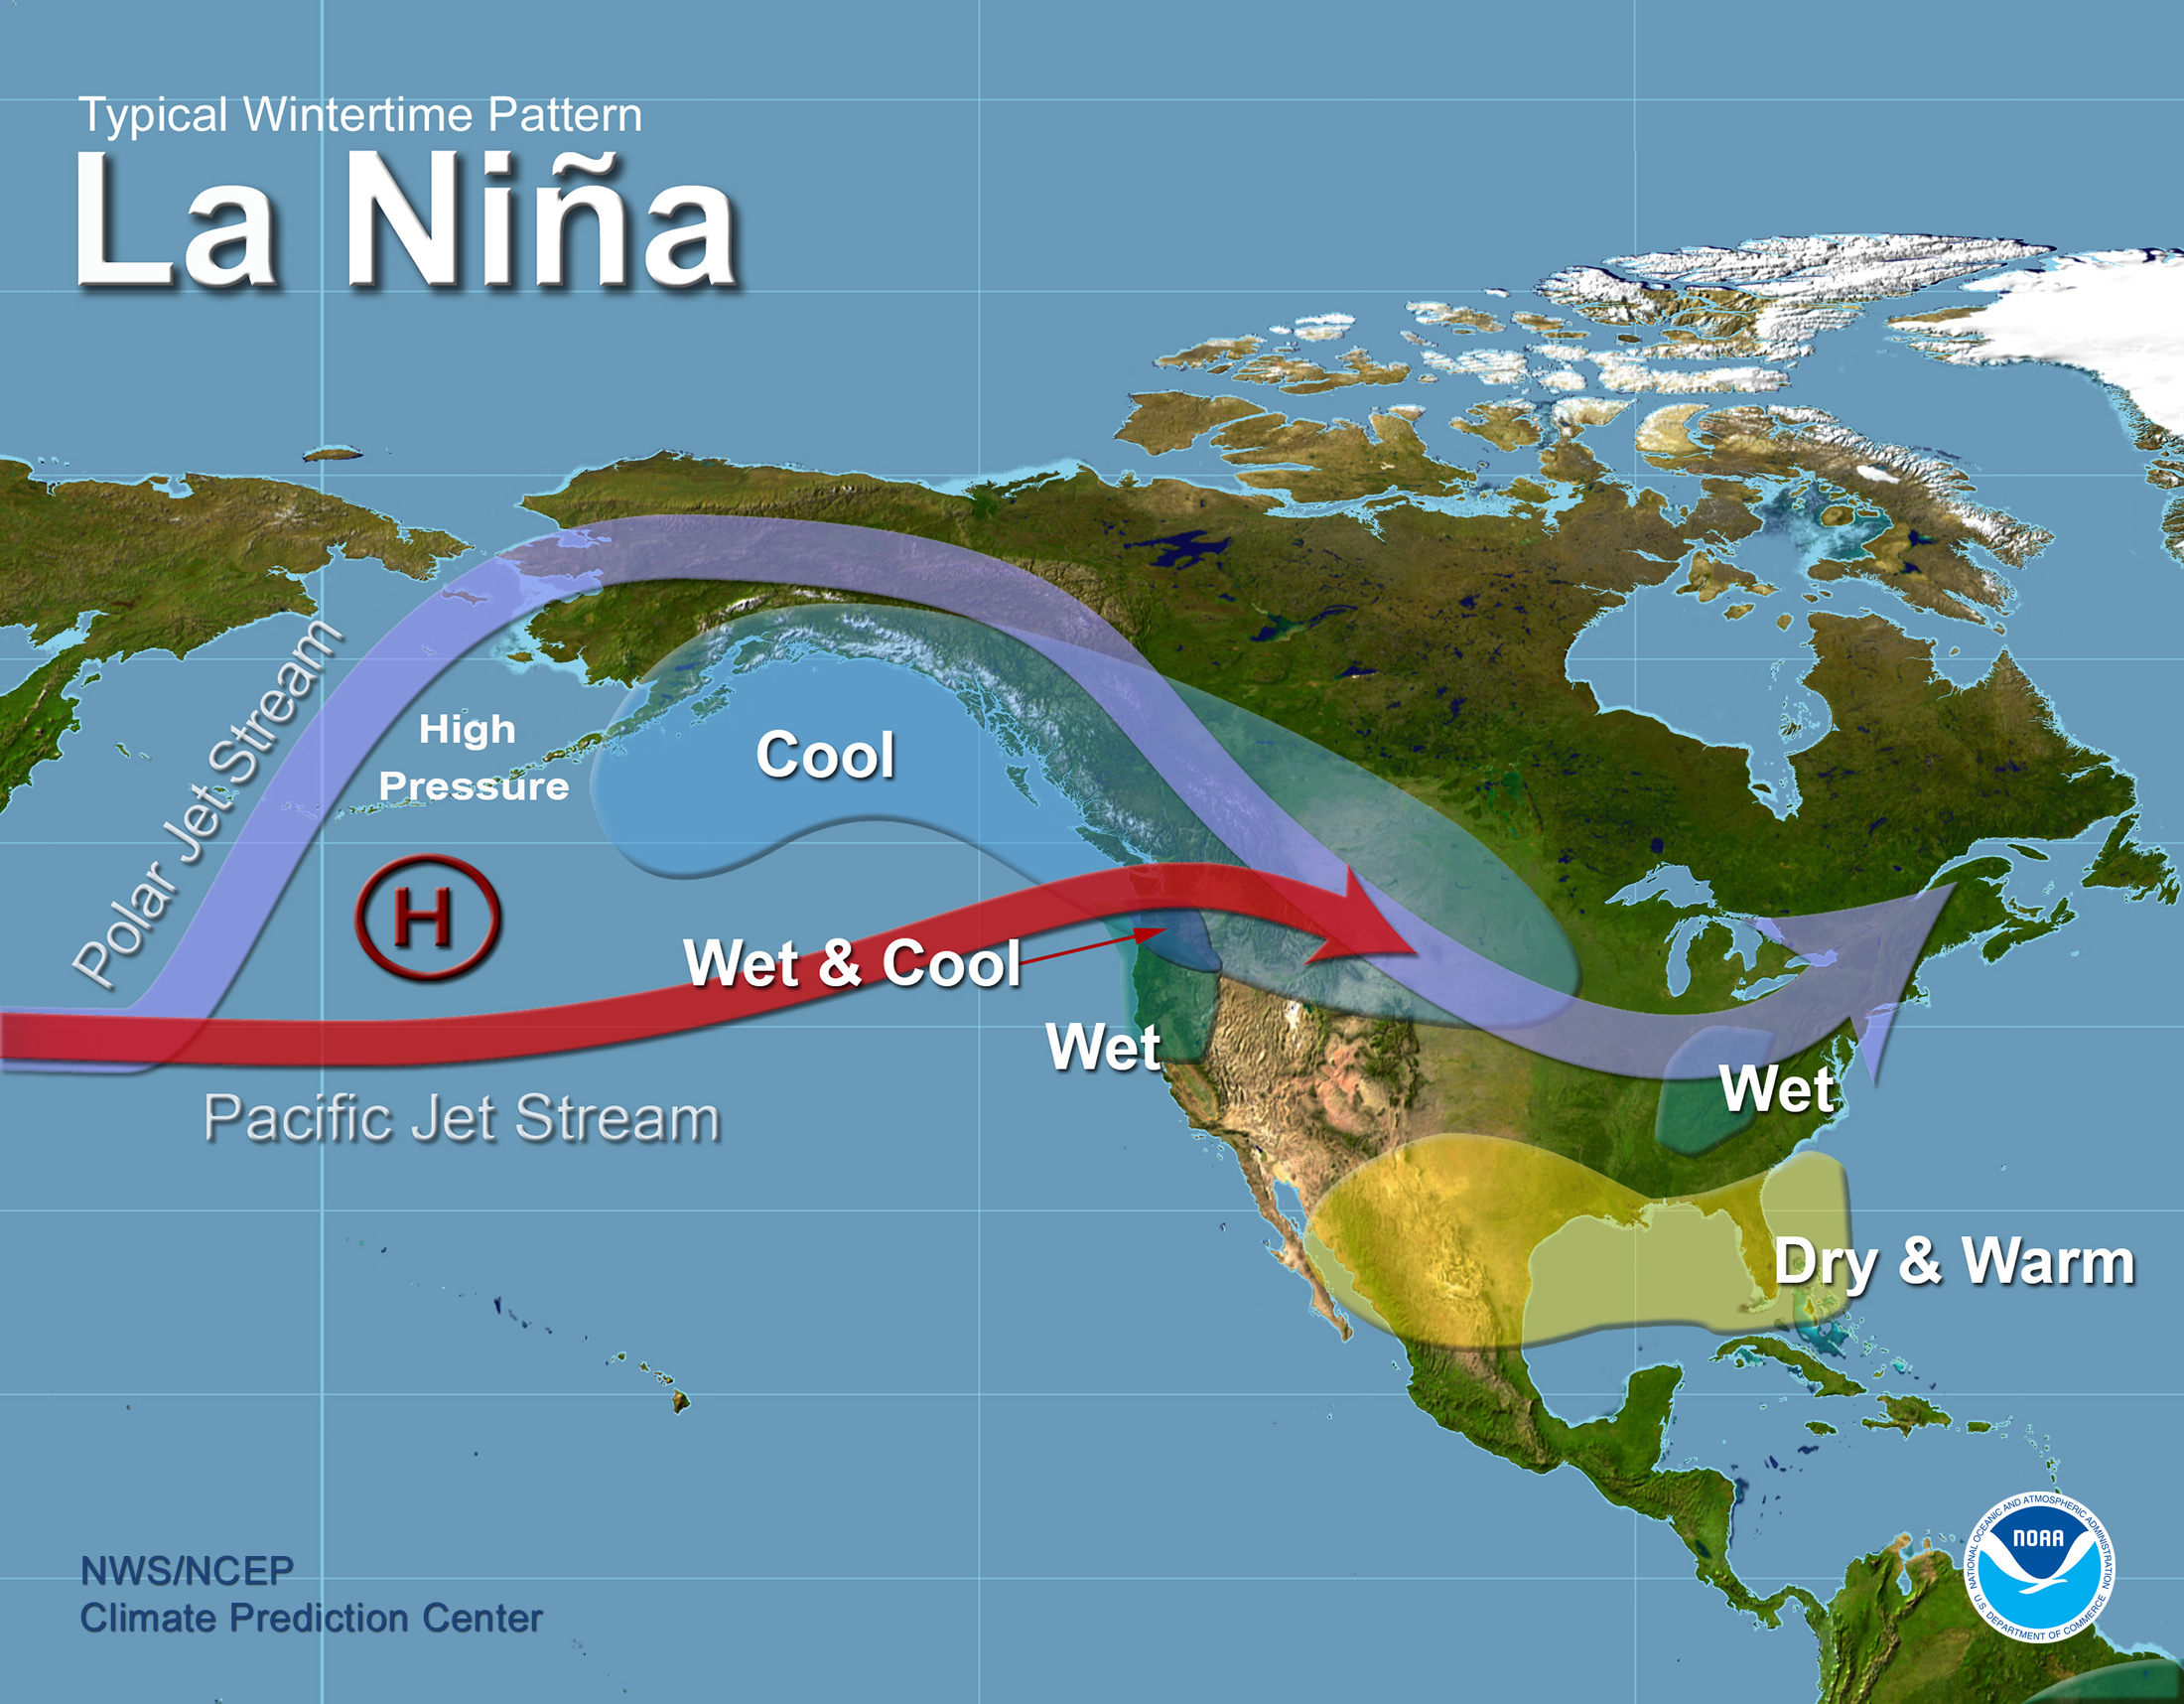 Image courtesy of NOAA.